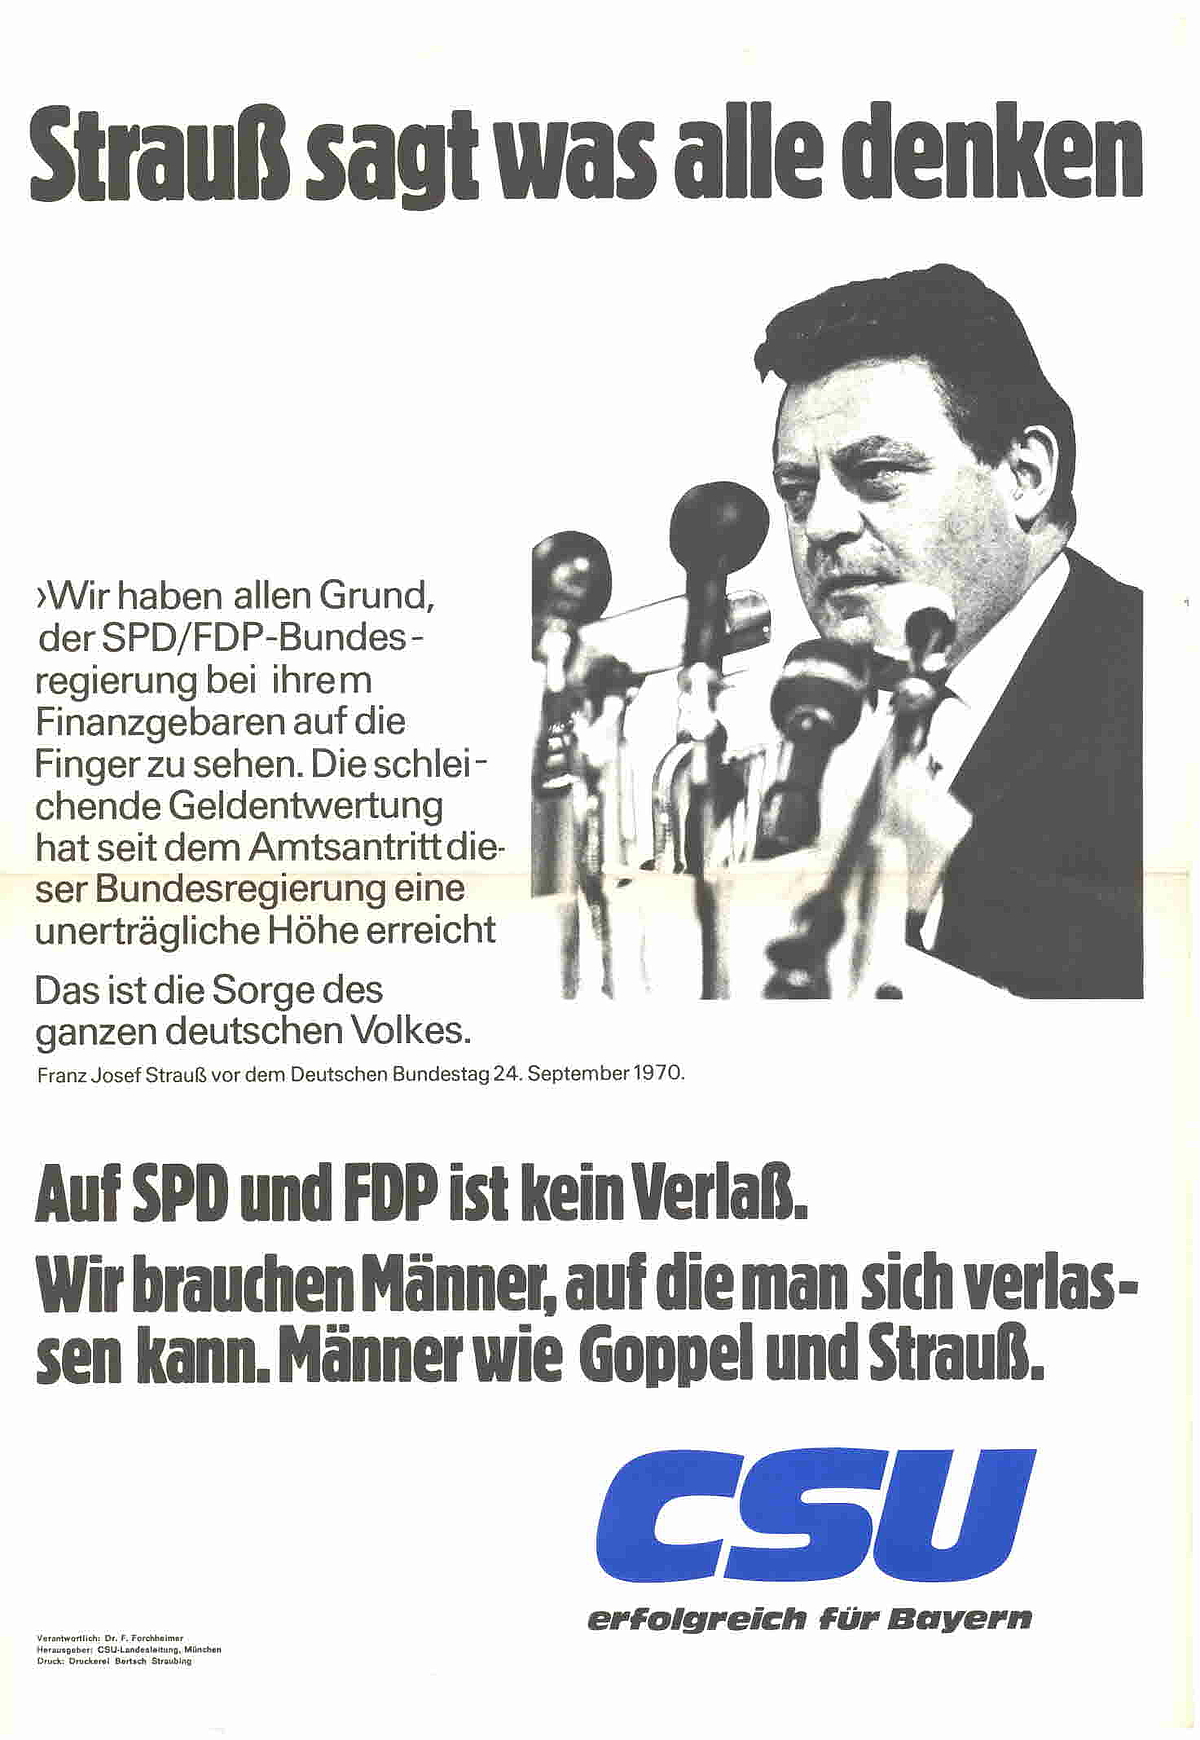 Plakat anlässlich der Landtagswahl in Bayern 1970
